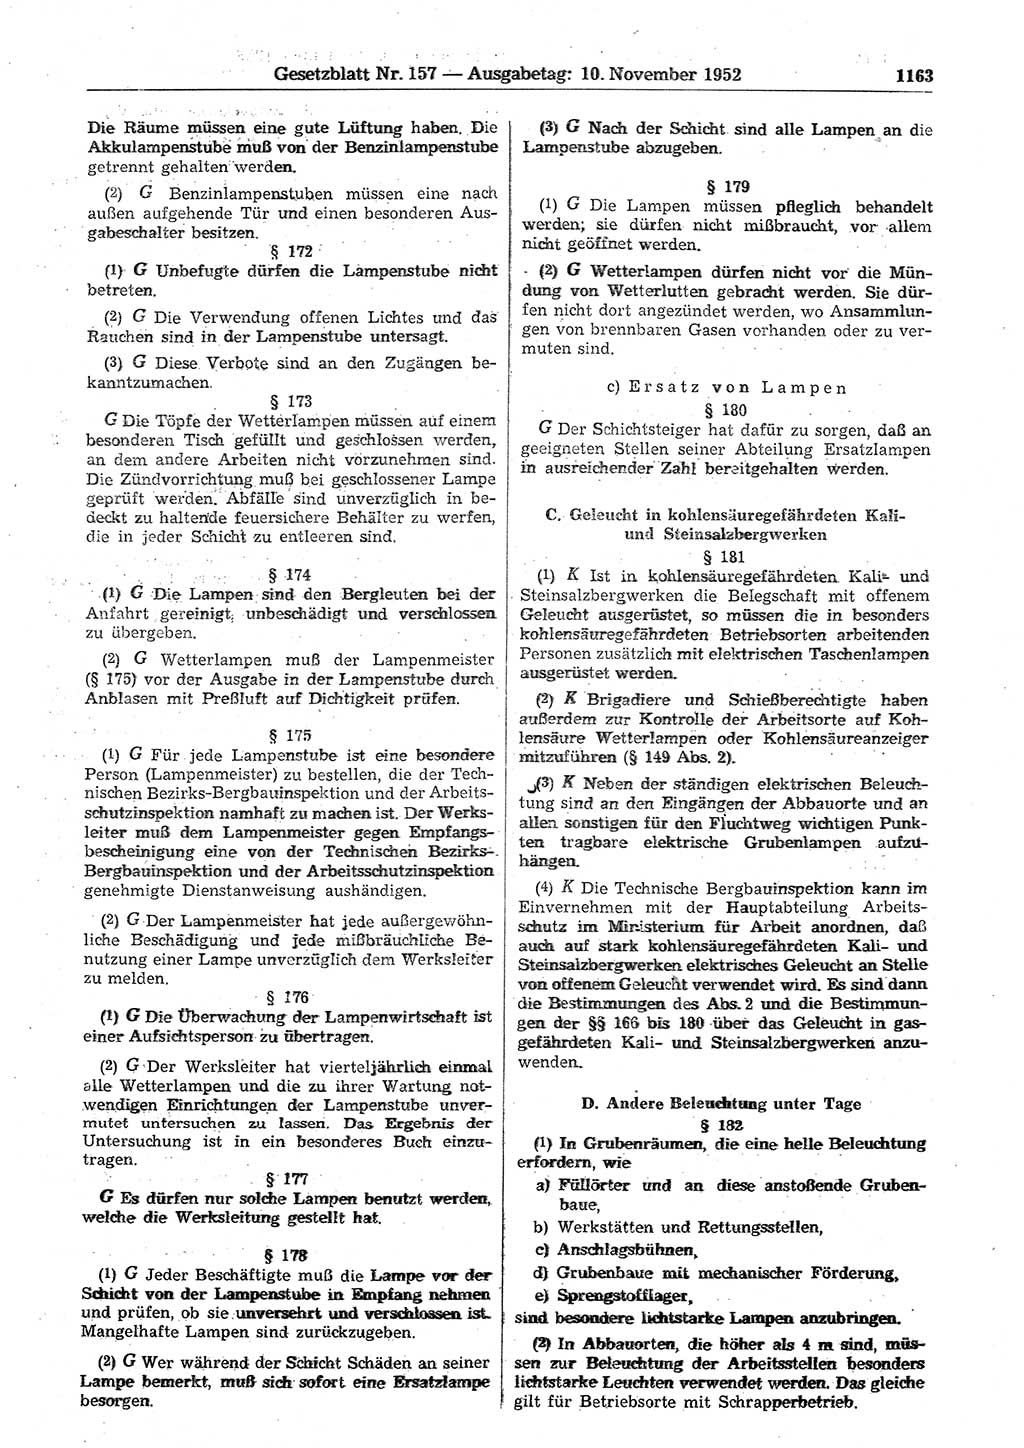 Gesetzblatt (GBl.) der Deutschen Demokratischen Republik (DDR) 1952, Seite 1163 (GBl. DDR 1952, S. 1163)